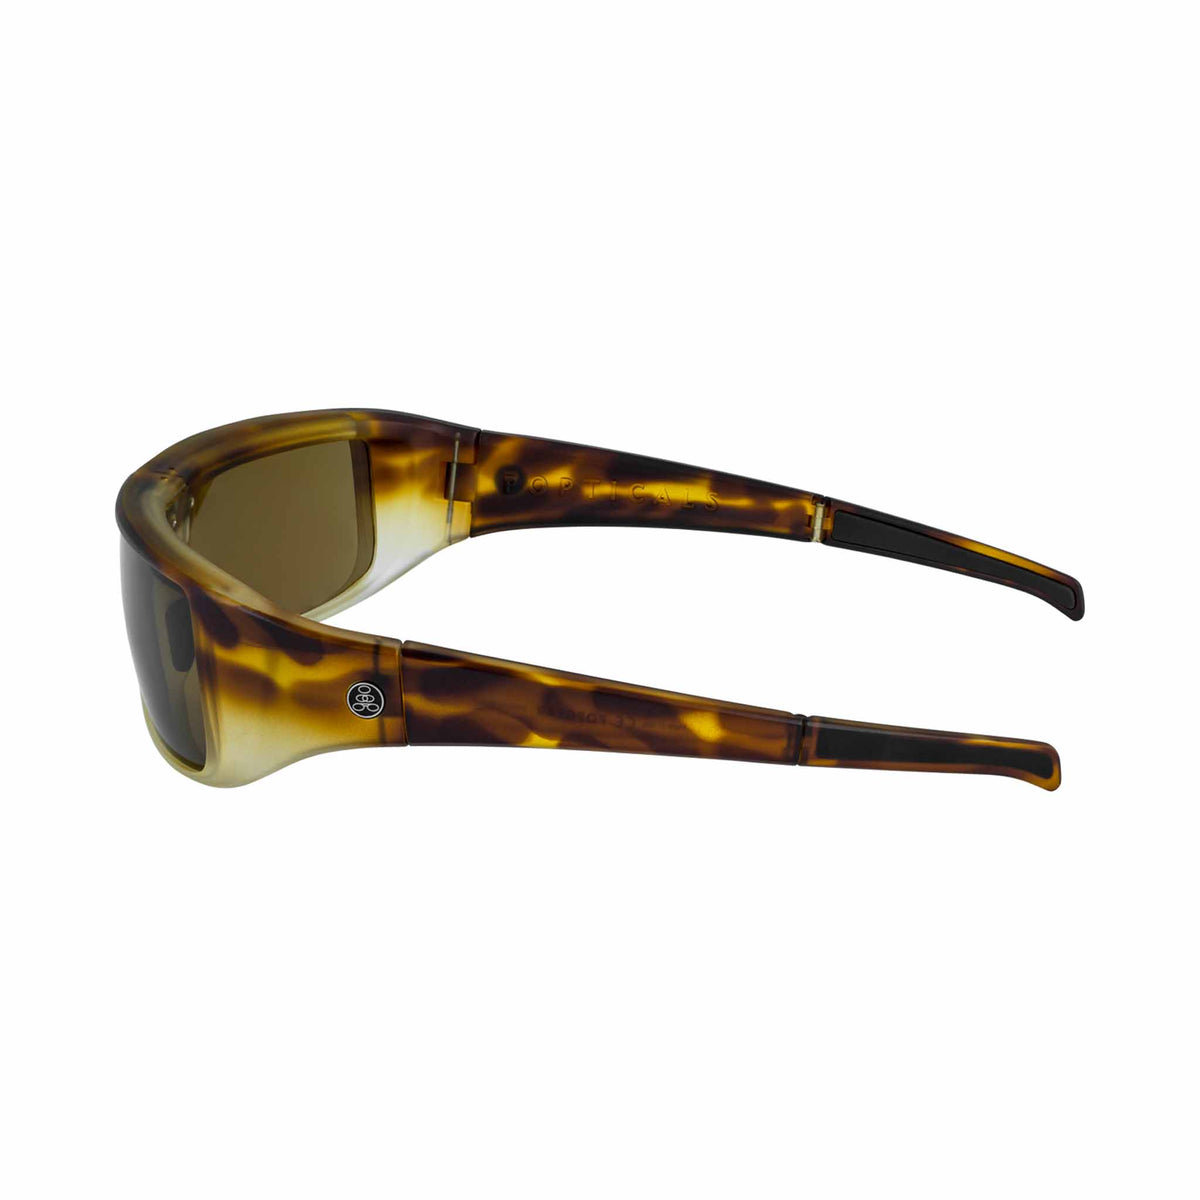 Popticals, Premium Compact Sunglasses, PopGear, 010050-BUNP, Polarized Sunglasses, Matte Tortoise Crystal Frames, Brown Lenses, Side View